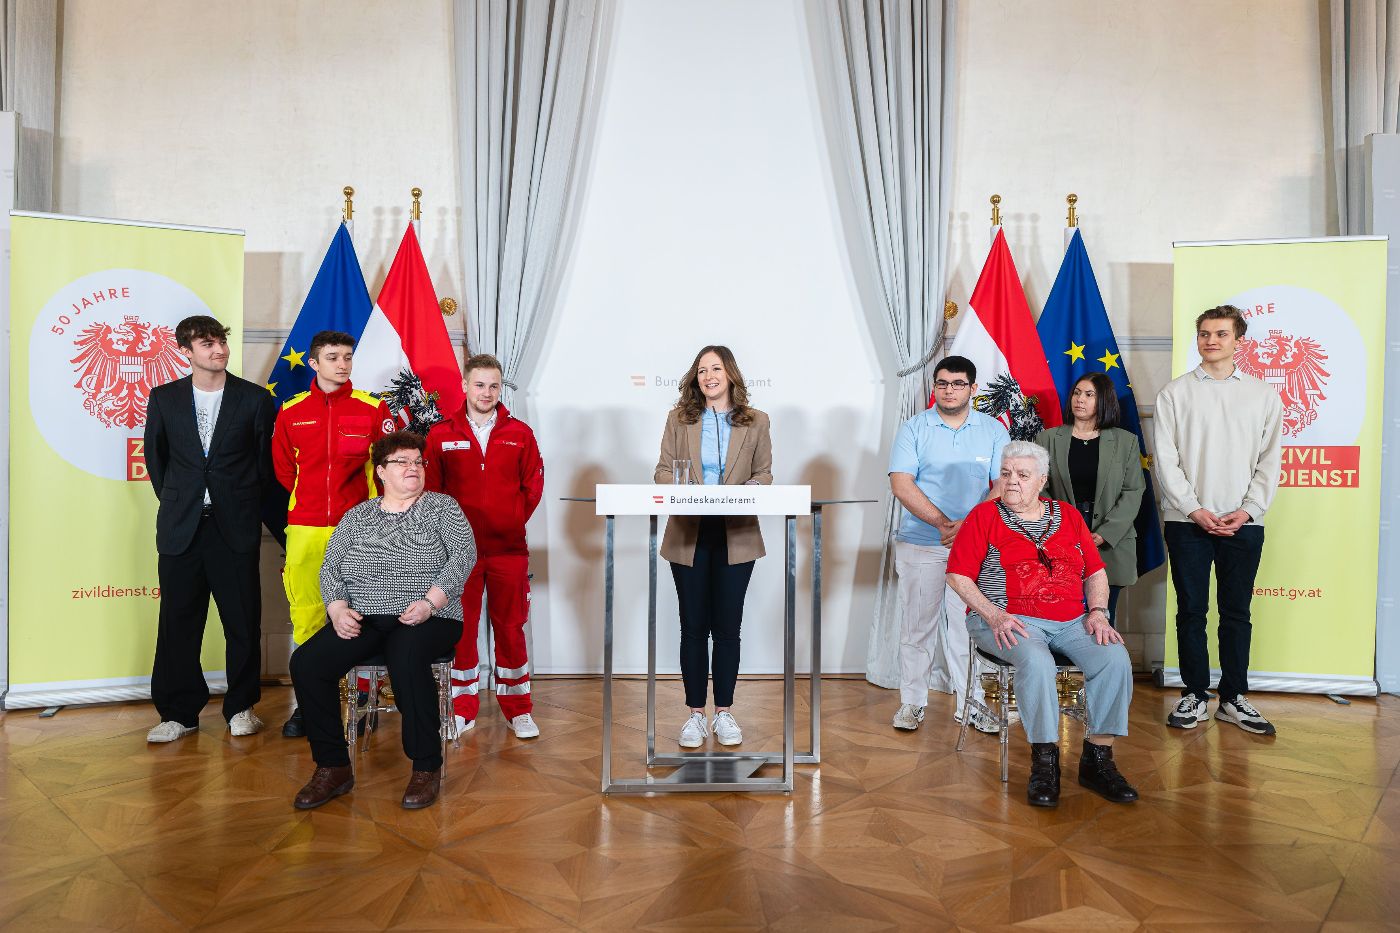 Pressekonferenz mit Staatssekretärin Claudia Plakolm zu 50 Jahre Parlamentsbeschluss zur Einführung des Zivildienstes in Österreich